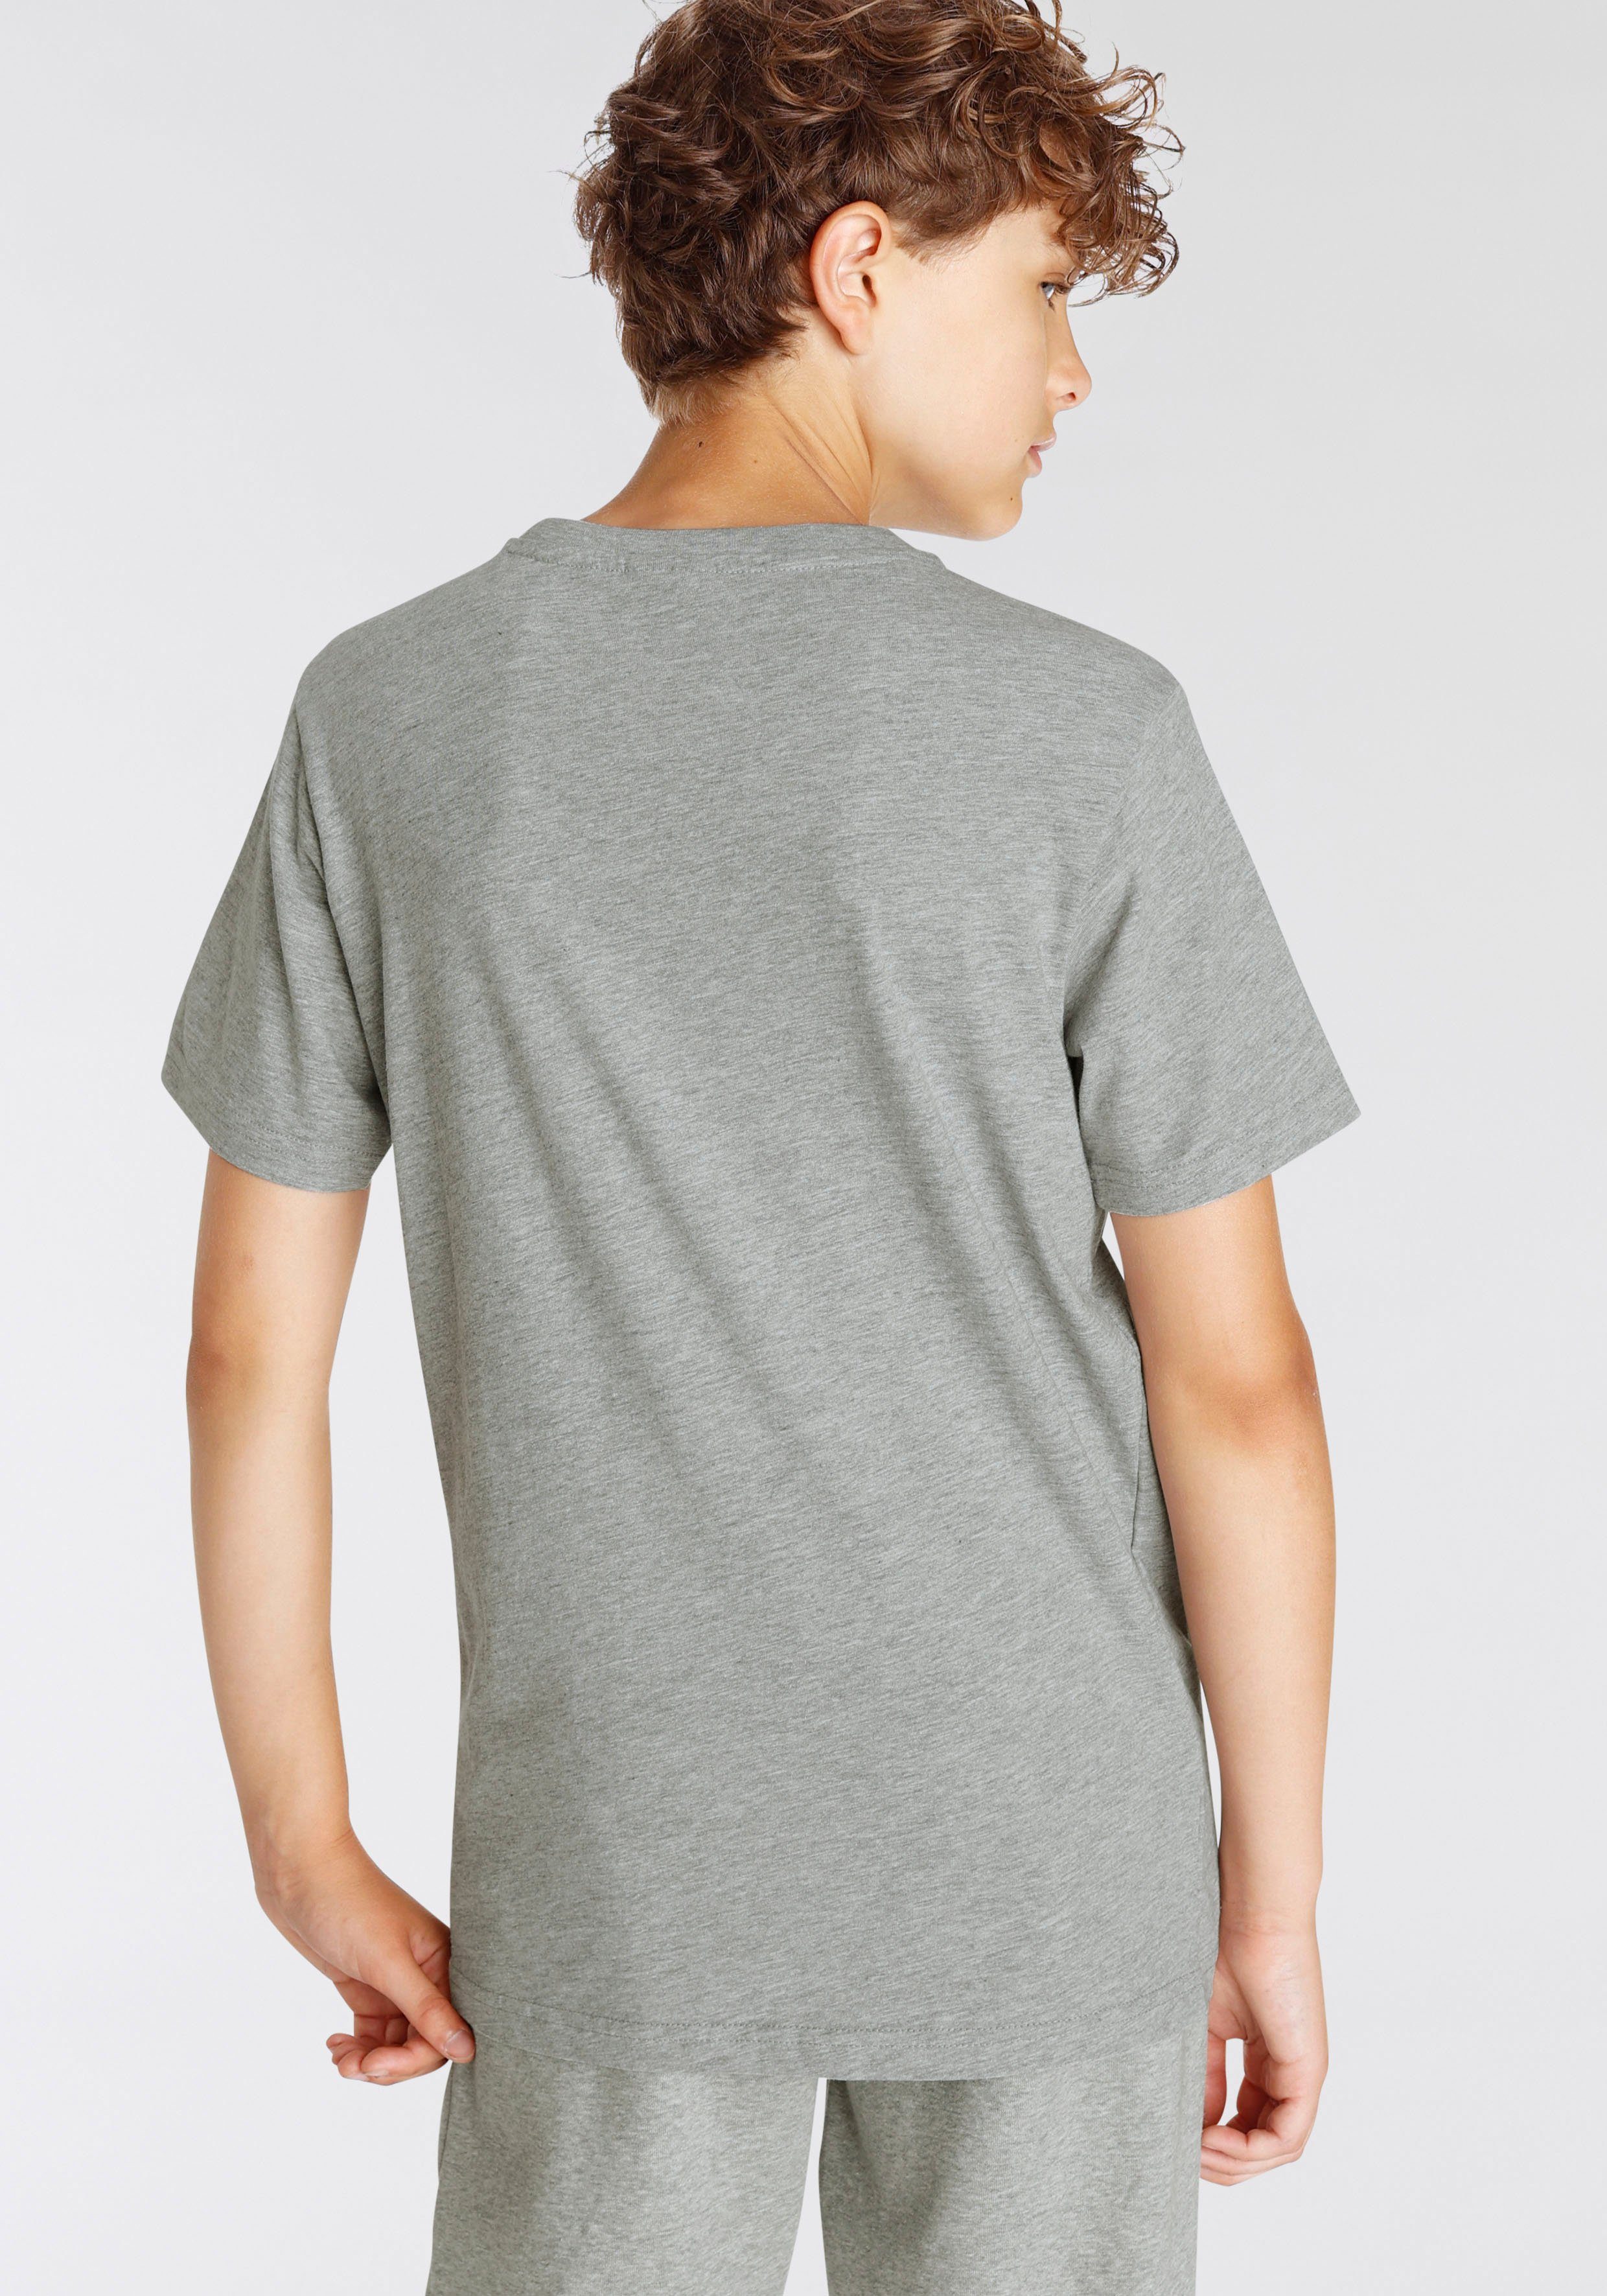 Kinder T-Shirt schwarz-grau 2-tlg) 2pack für Crew-Neck Basic - (Packung, Champion